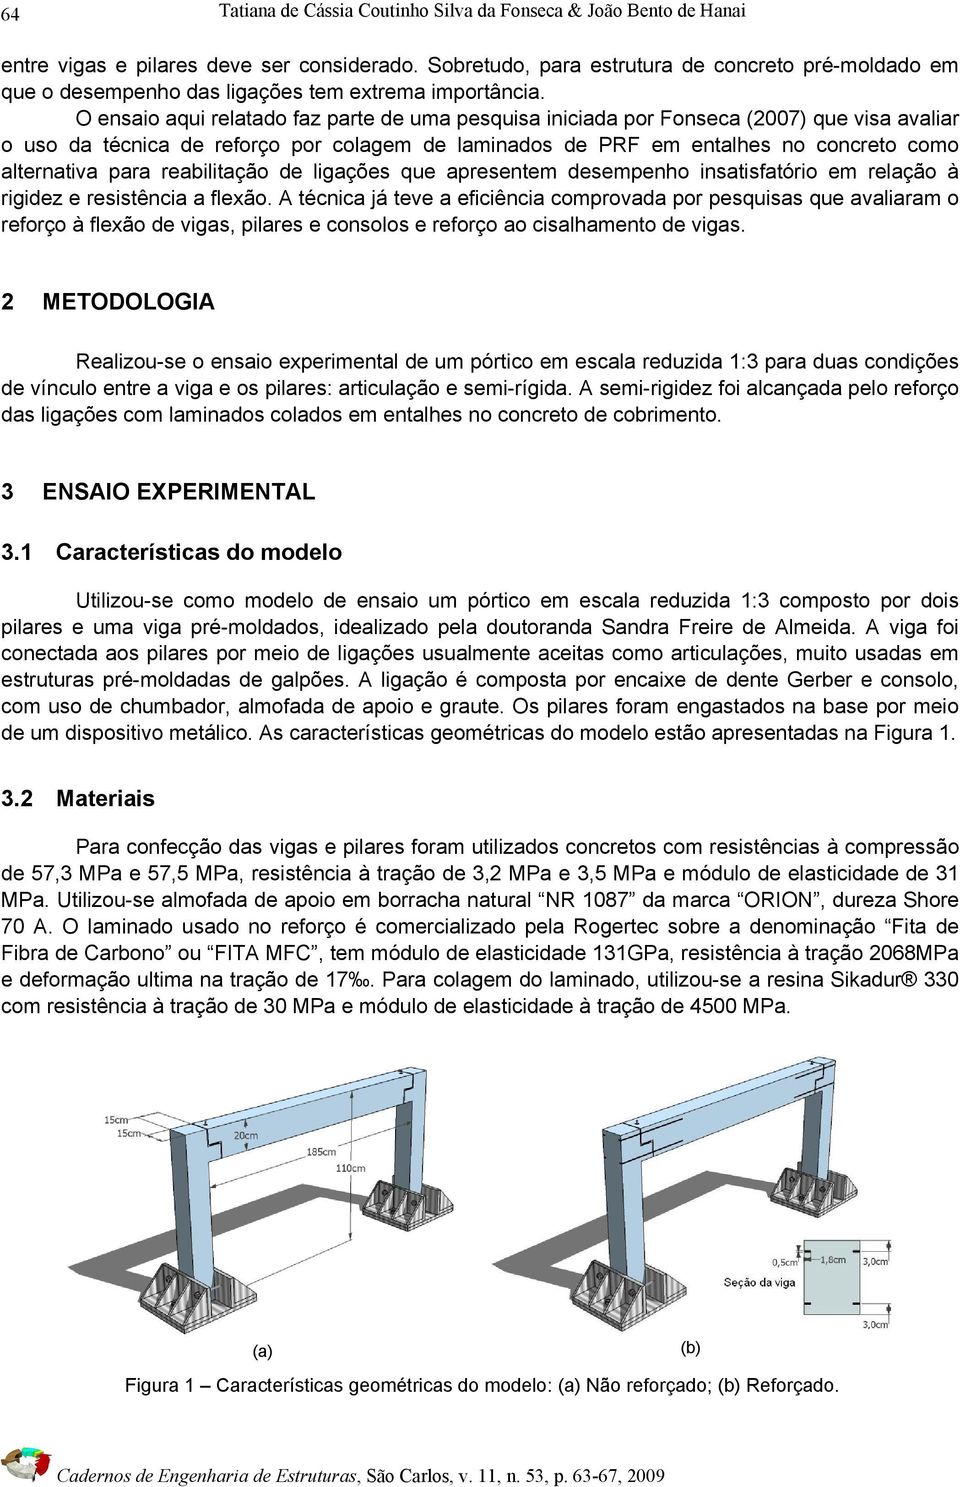 O ensaio aqui relatado faz parte de uma pesquisa iniciada por Fonseca (2007) que visa avaliar o uso da técnica de reforço por colagem de laminados de PRF em entalhes no concreto como alternativa para